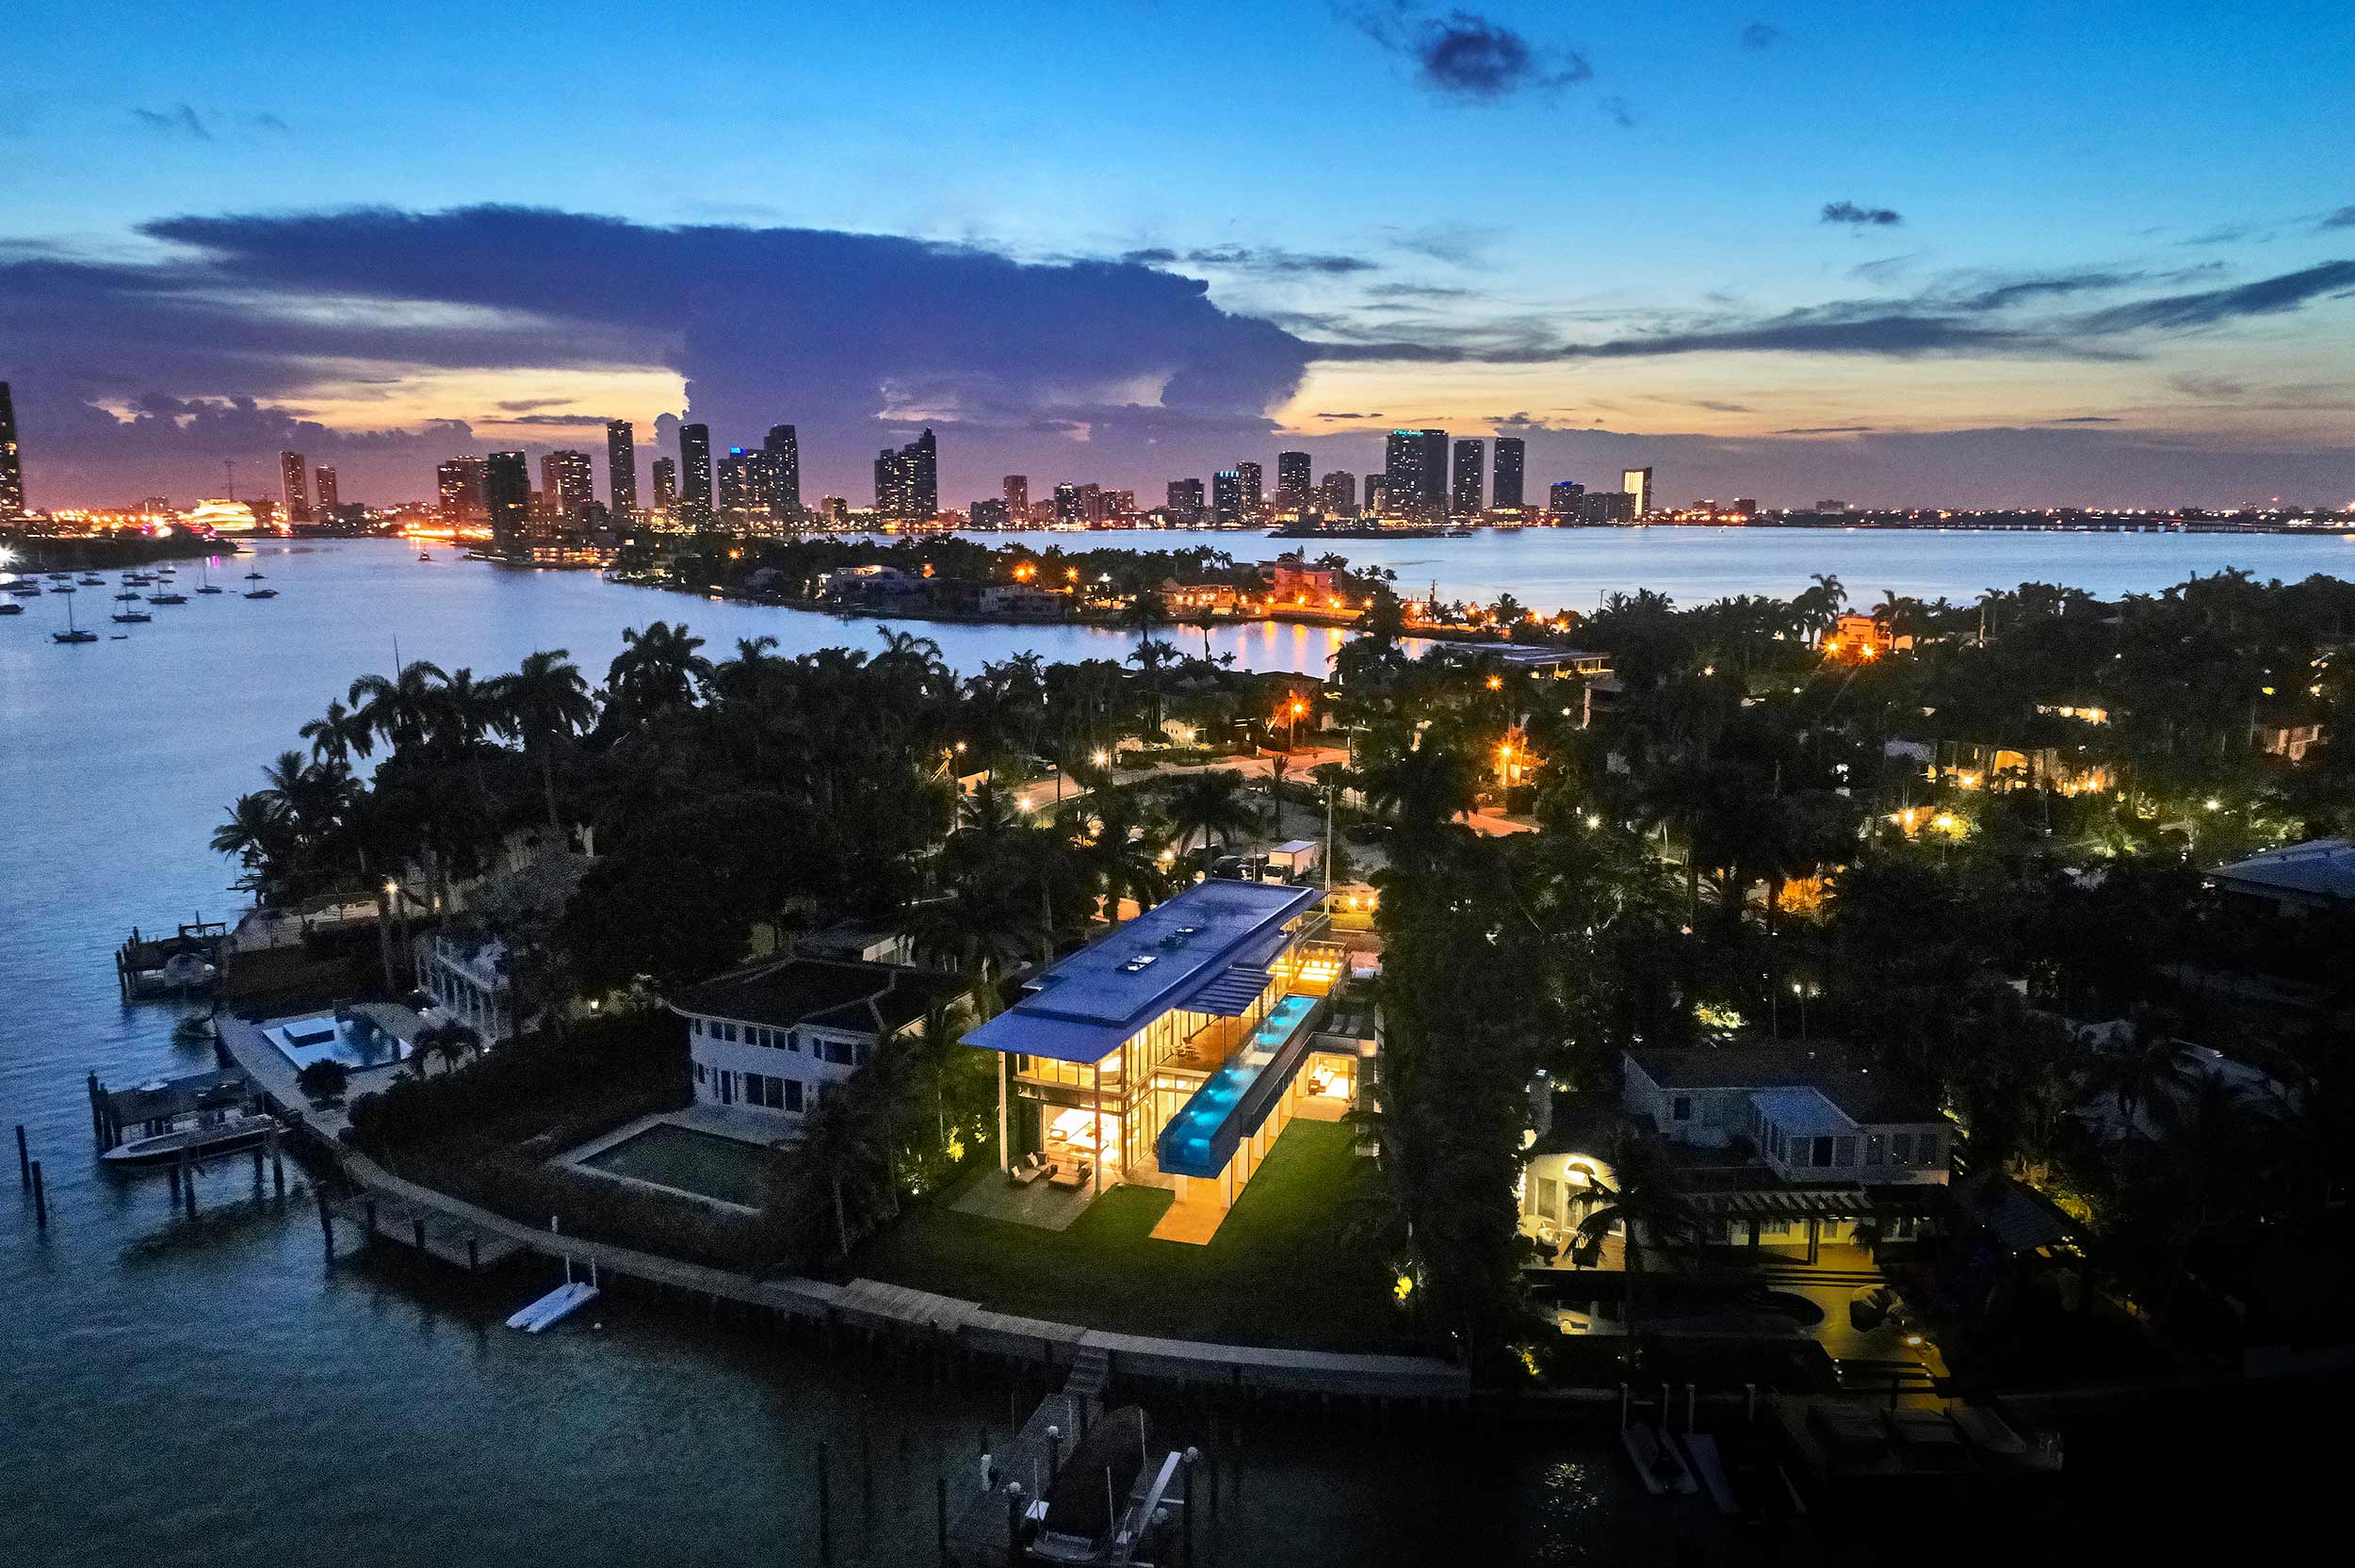  Private Residence Miami Beach, FL Bohlin Cywinski Jackson 